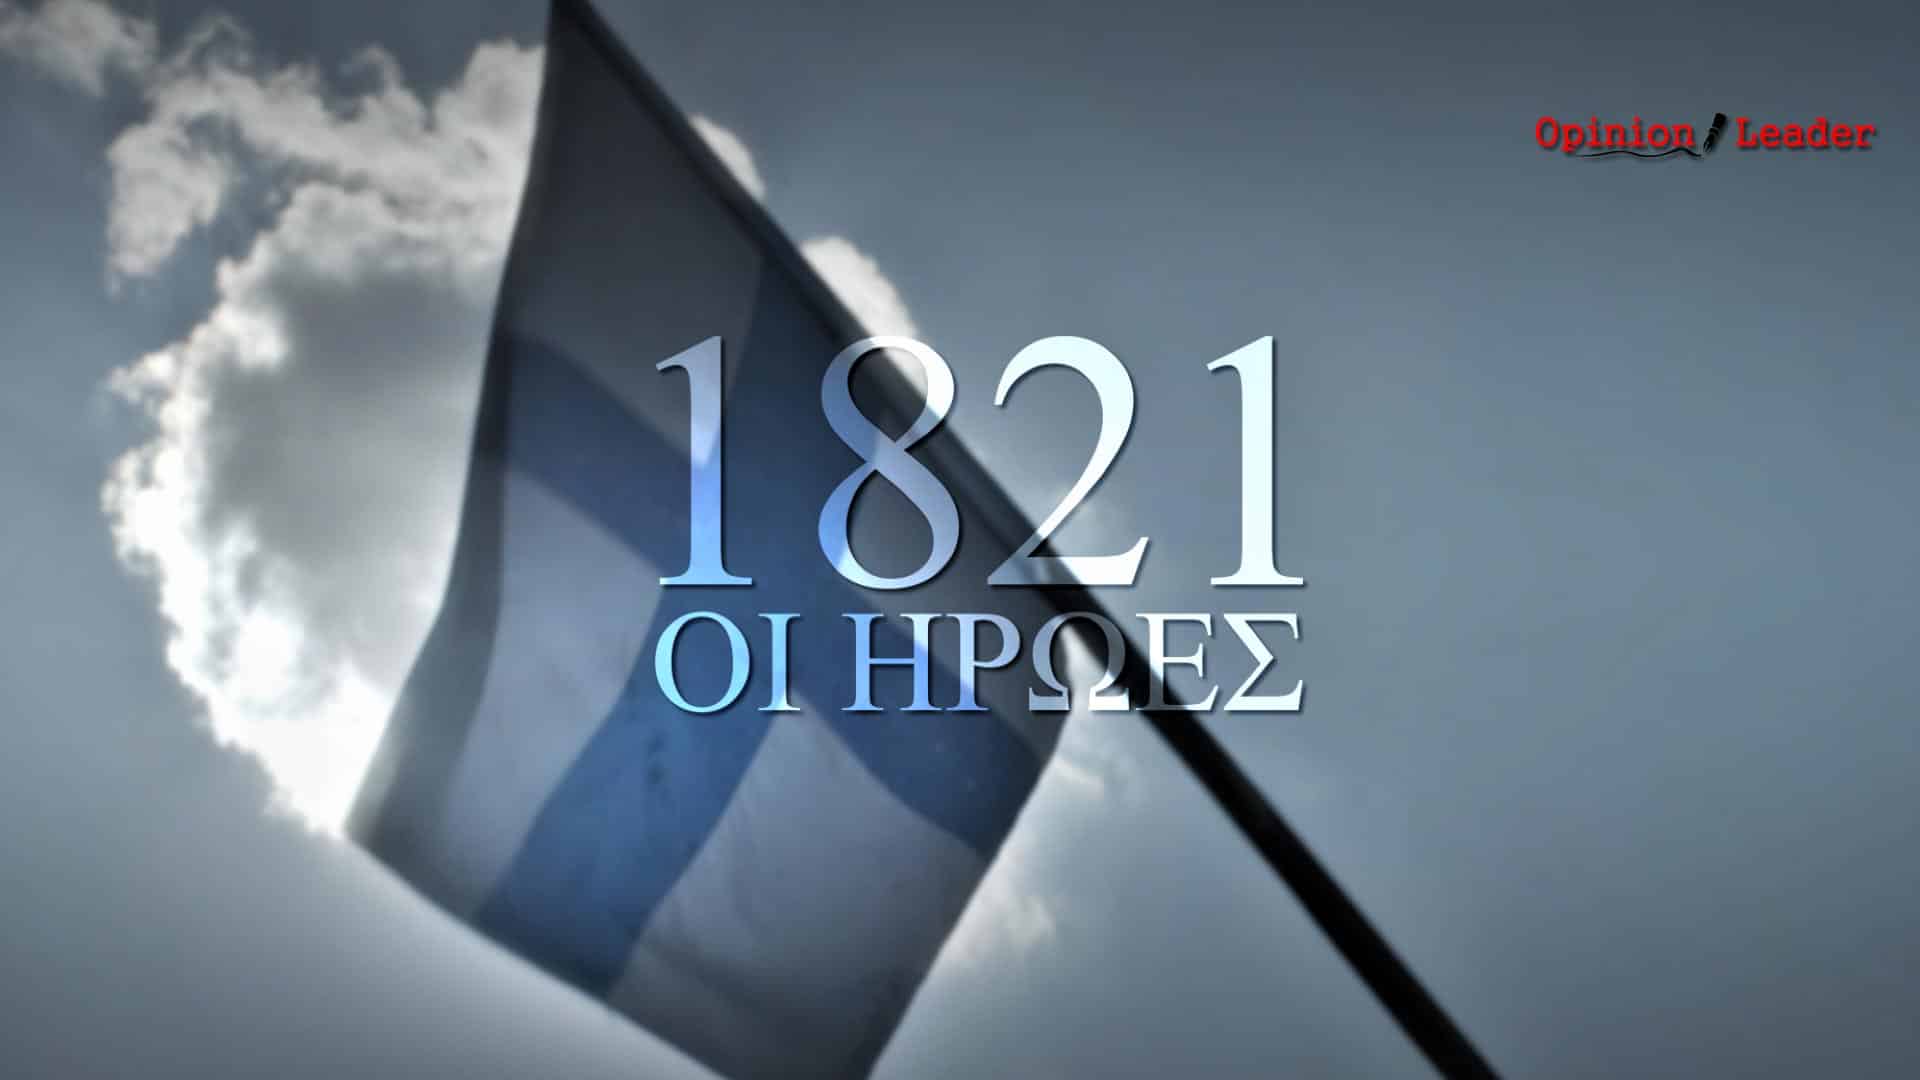 1821 Οι Ήρωες - ΣΚΑΪ - 200 χρόνια Ελληνική Επανάσταση